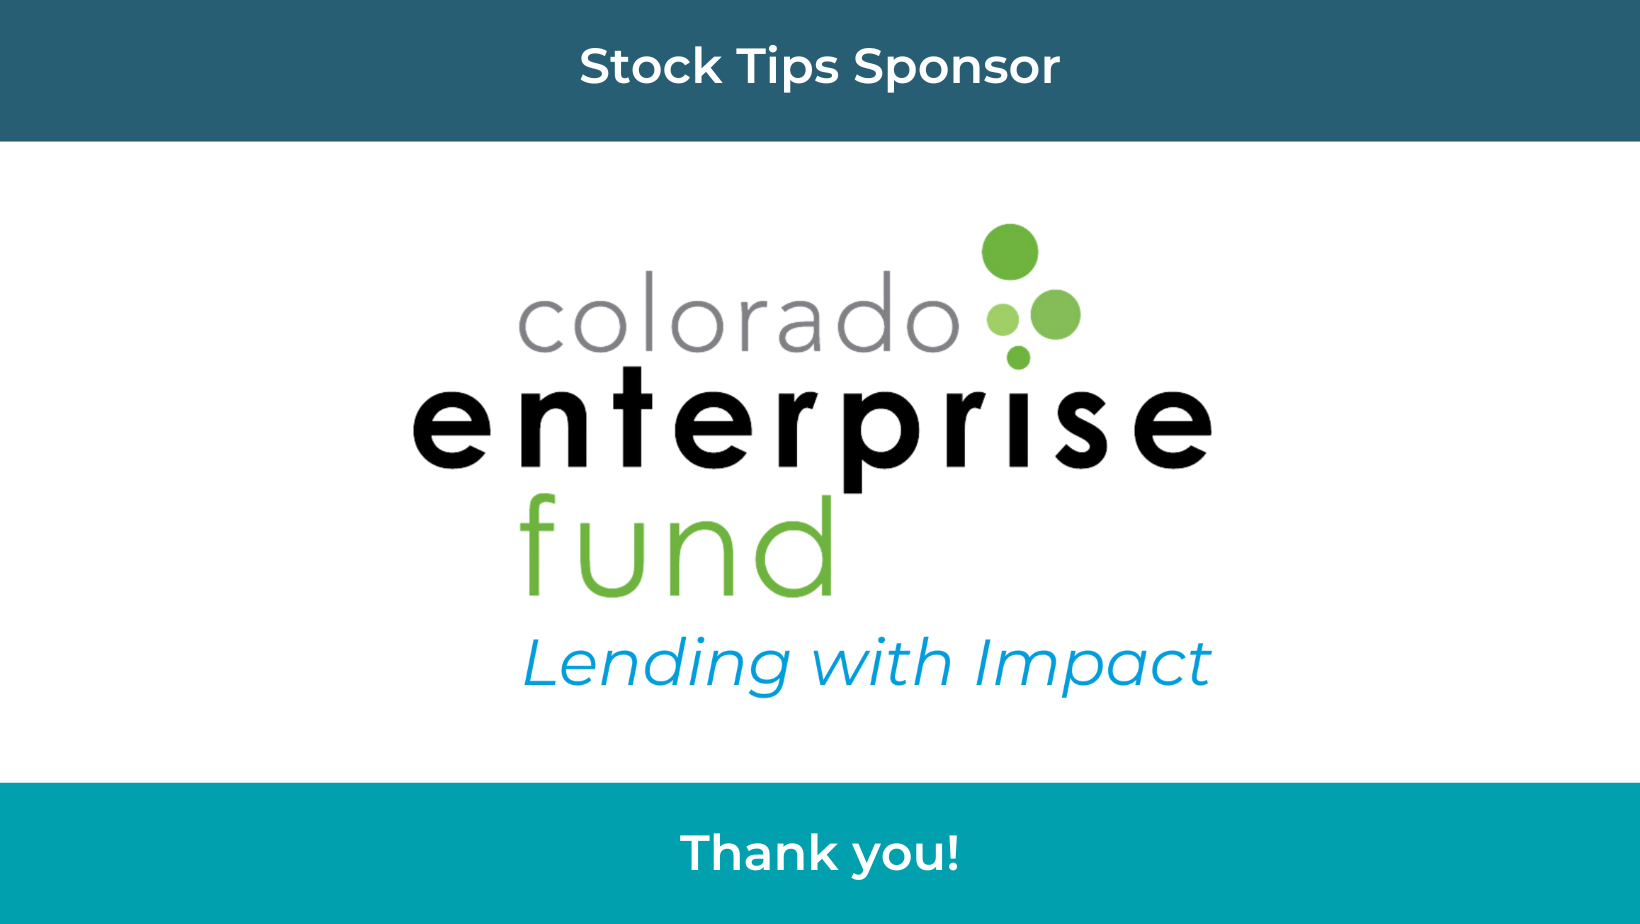 Colorado Enterprise Fund